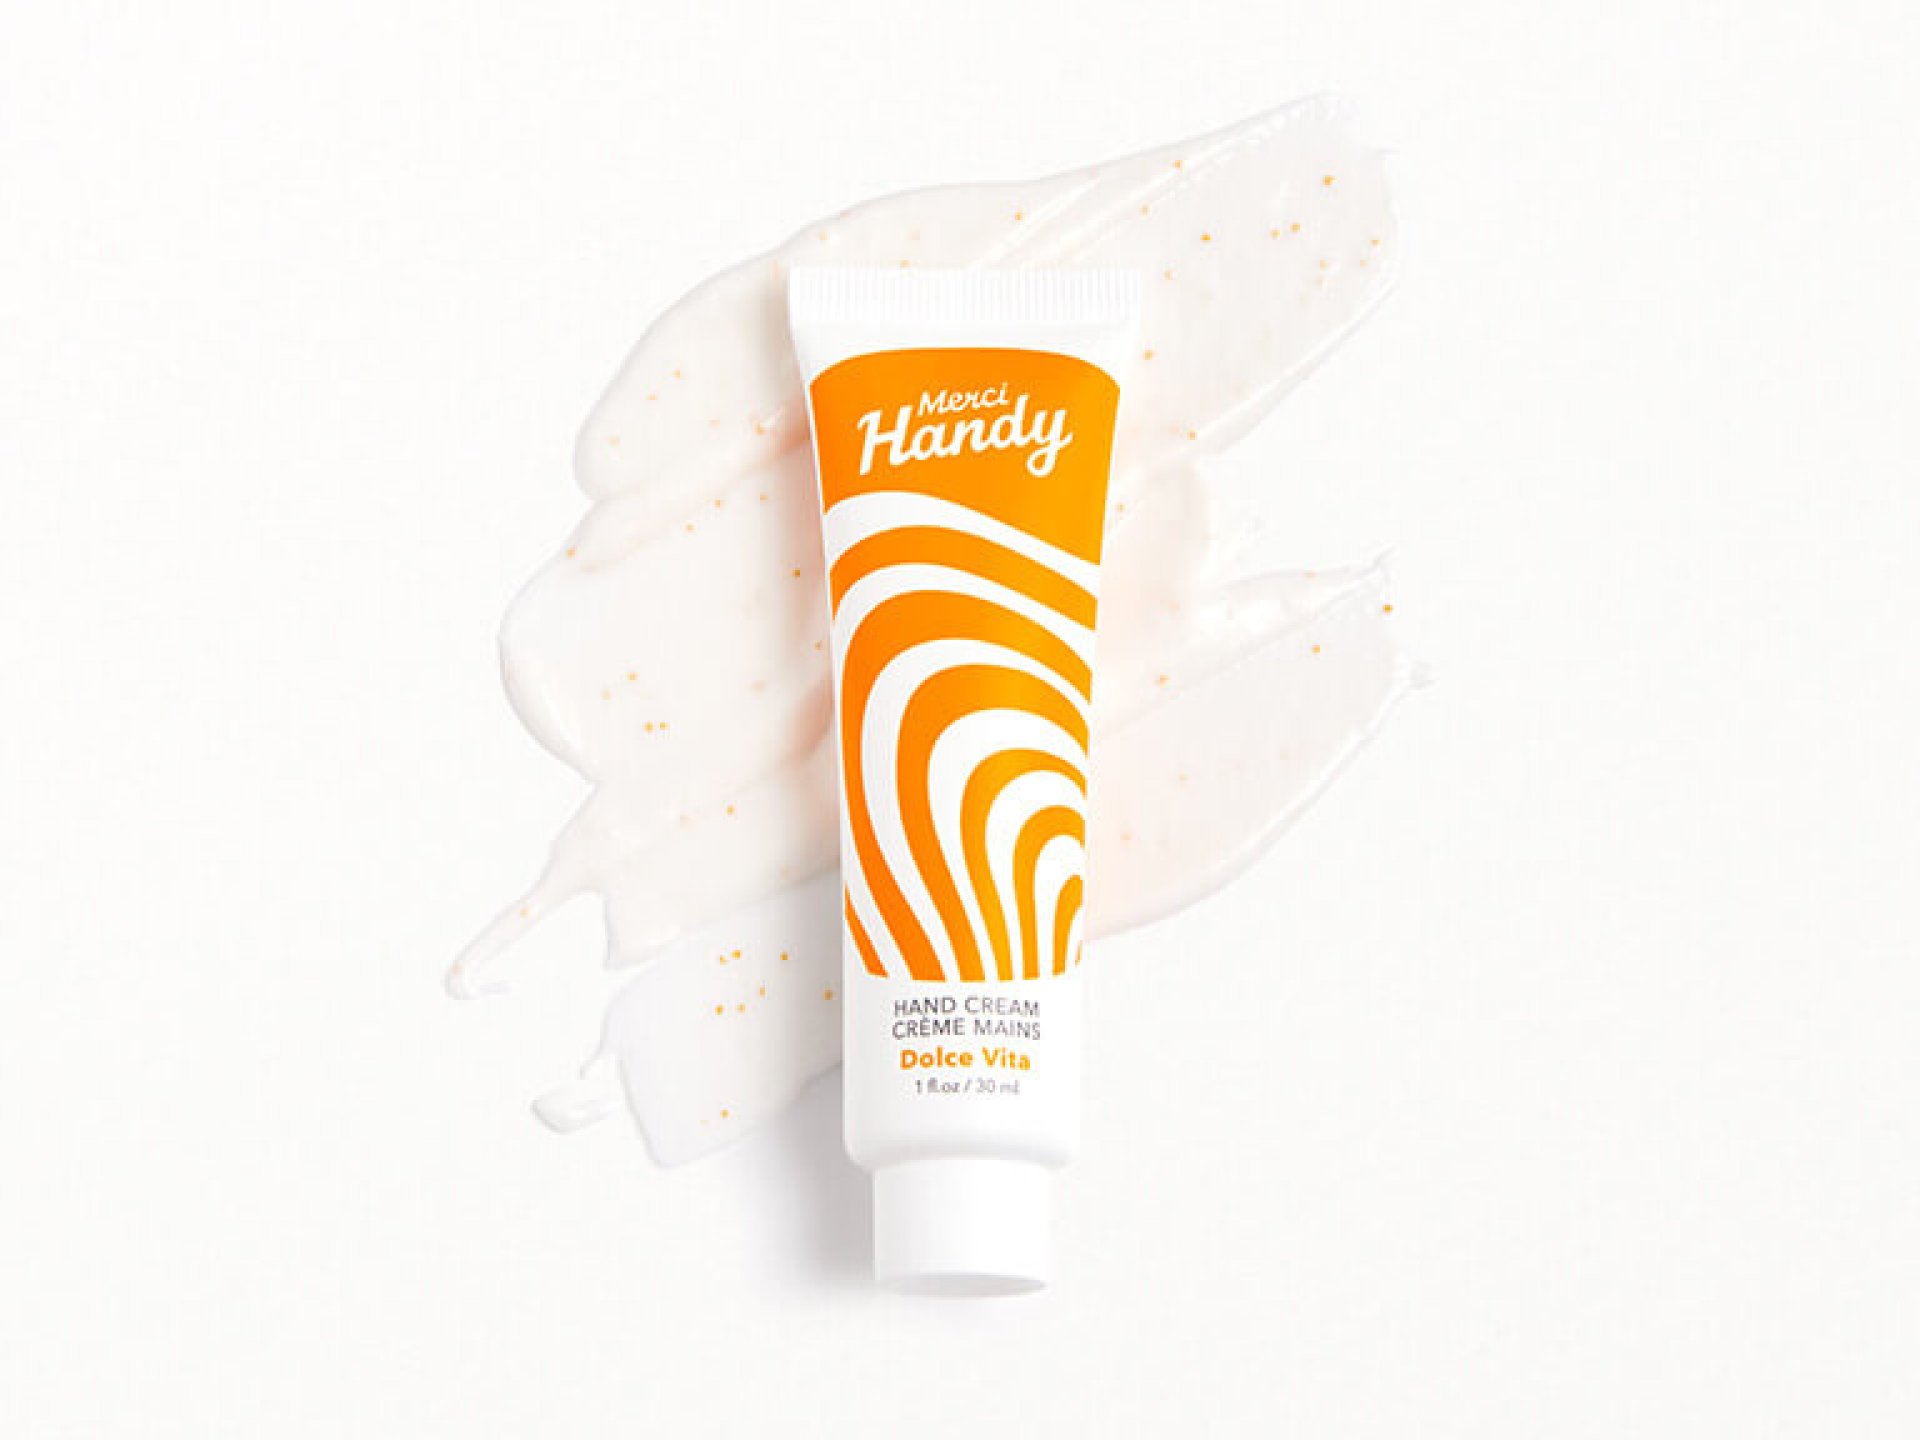 MERCI HANDY Hand Cream - Dolce Vita_0181